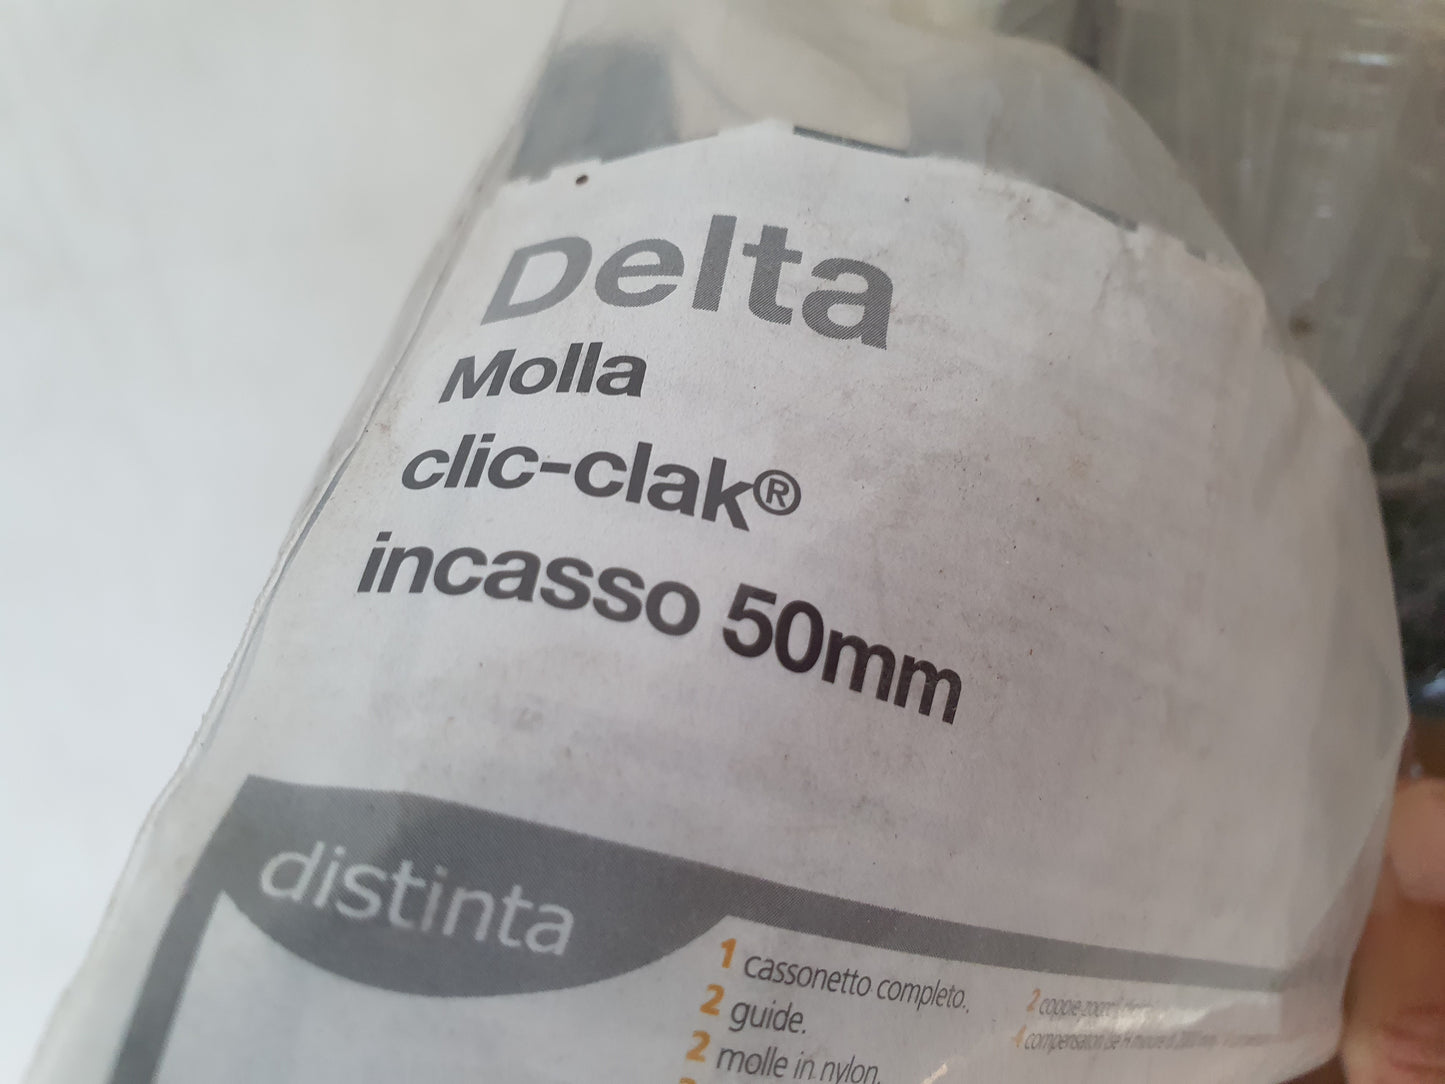 Zanzariera Delta molla clic-clak incasso 50 mm